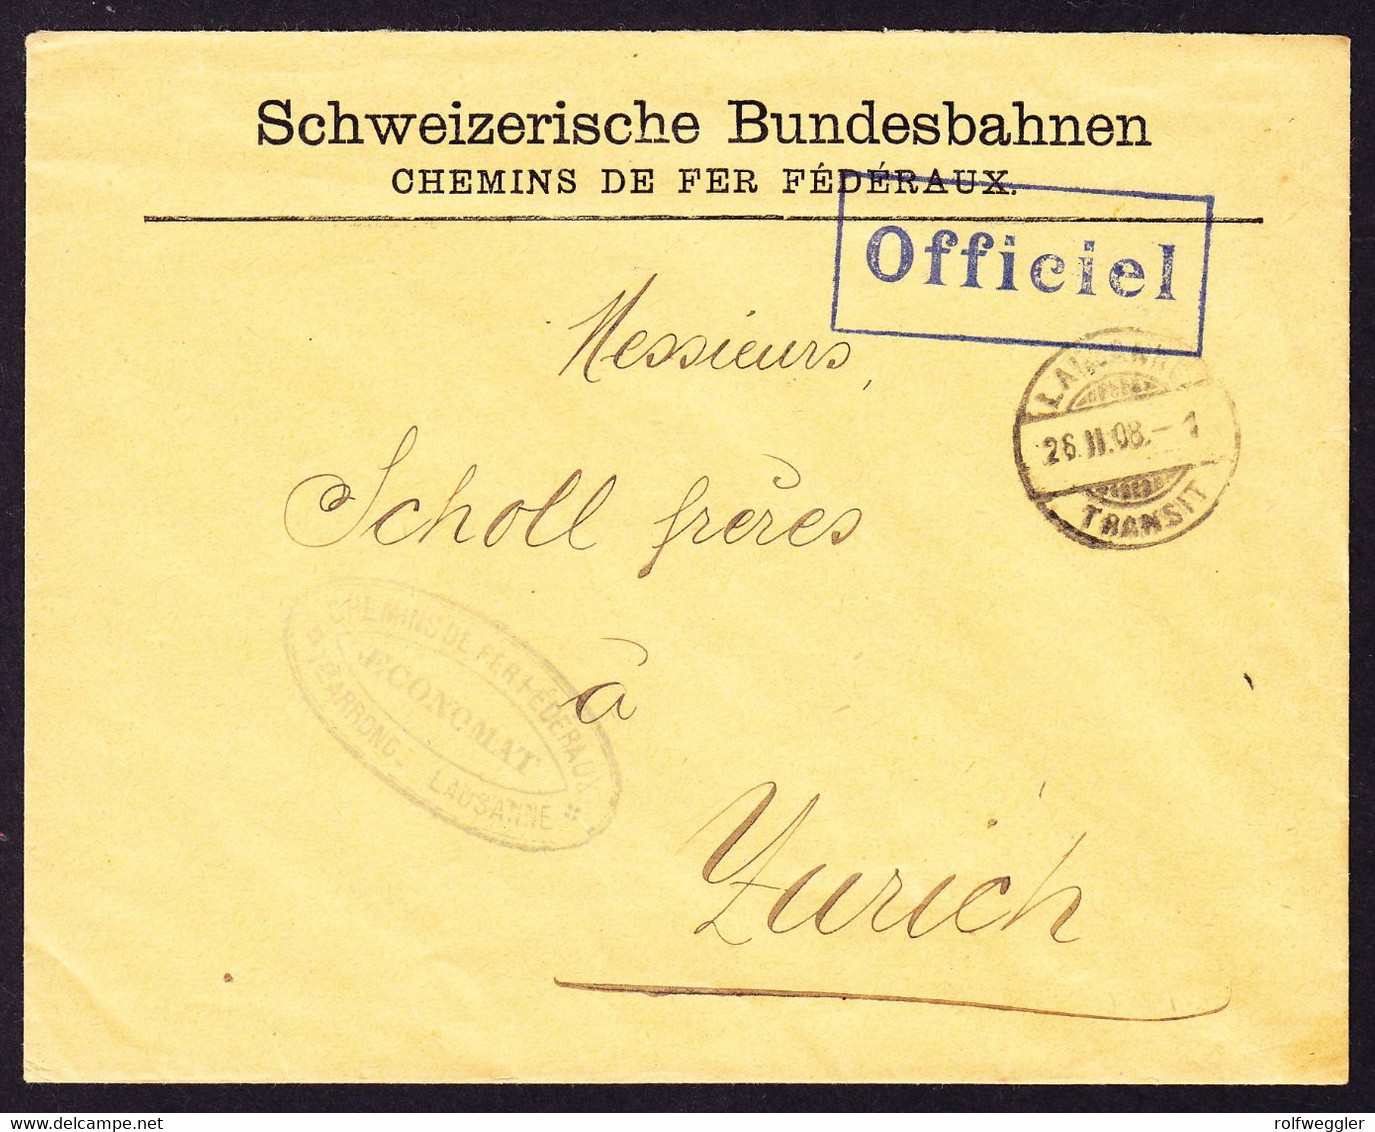 1908 Offizieller Brief Schweizerische Bundesbahnen. Aus Lausanne Nach Zürich. Blauer Stempel "Officiel" - Railway